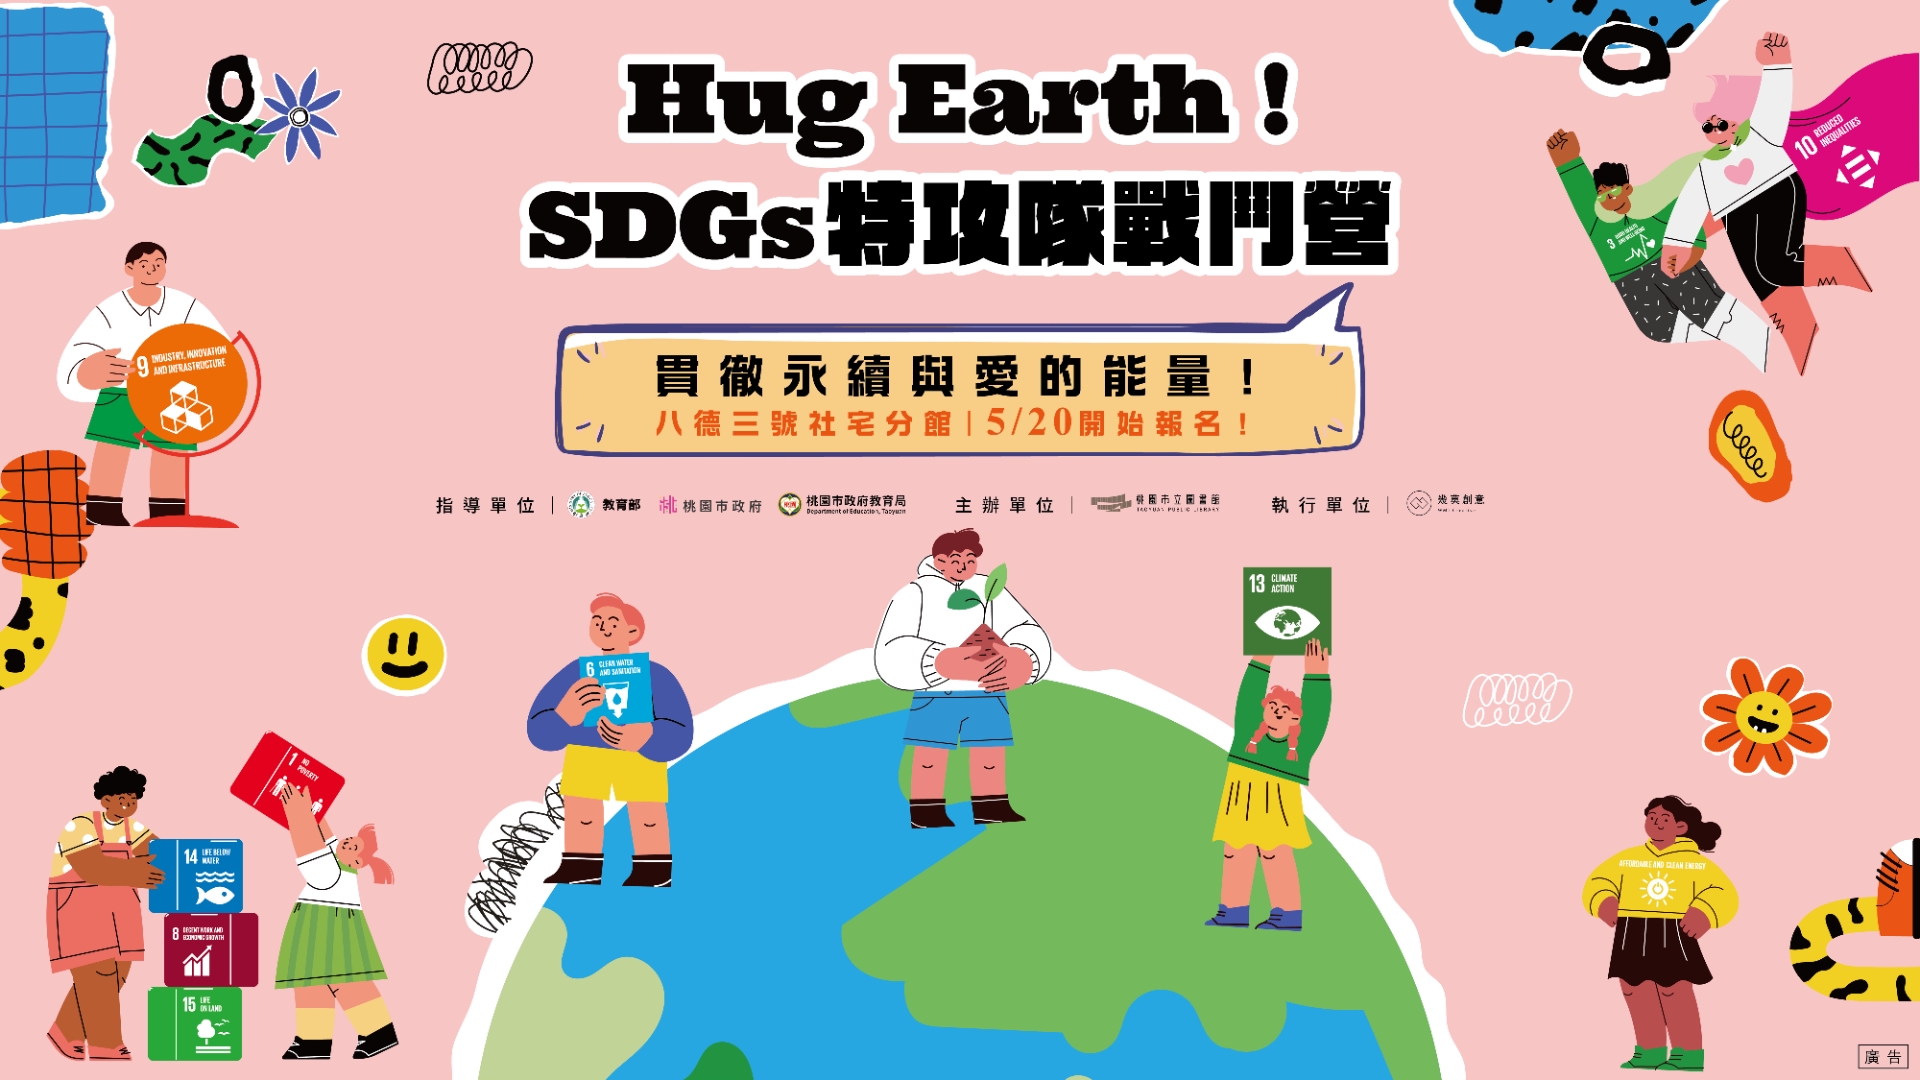 八德三號社宅分館暑期兒童營隊-Hug Earth！SDGS特攻隊戰鬥營